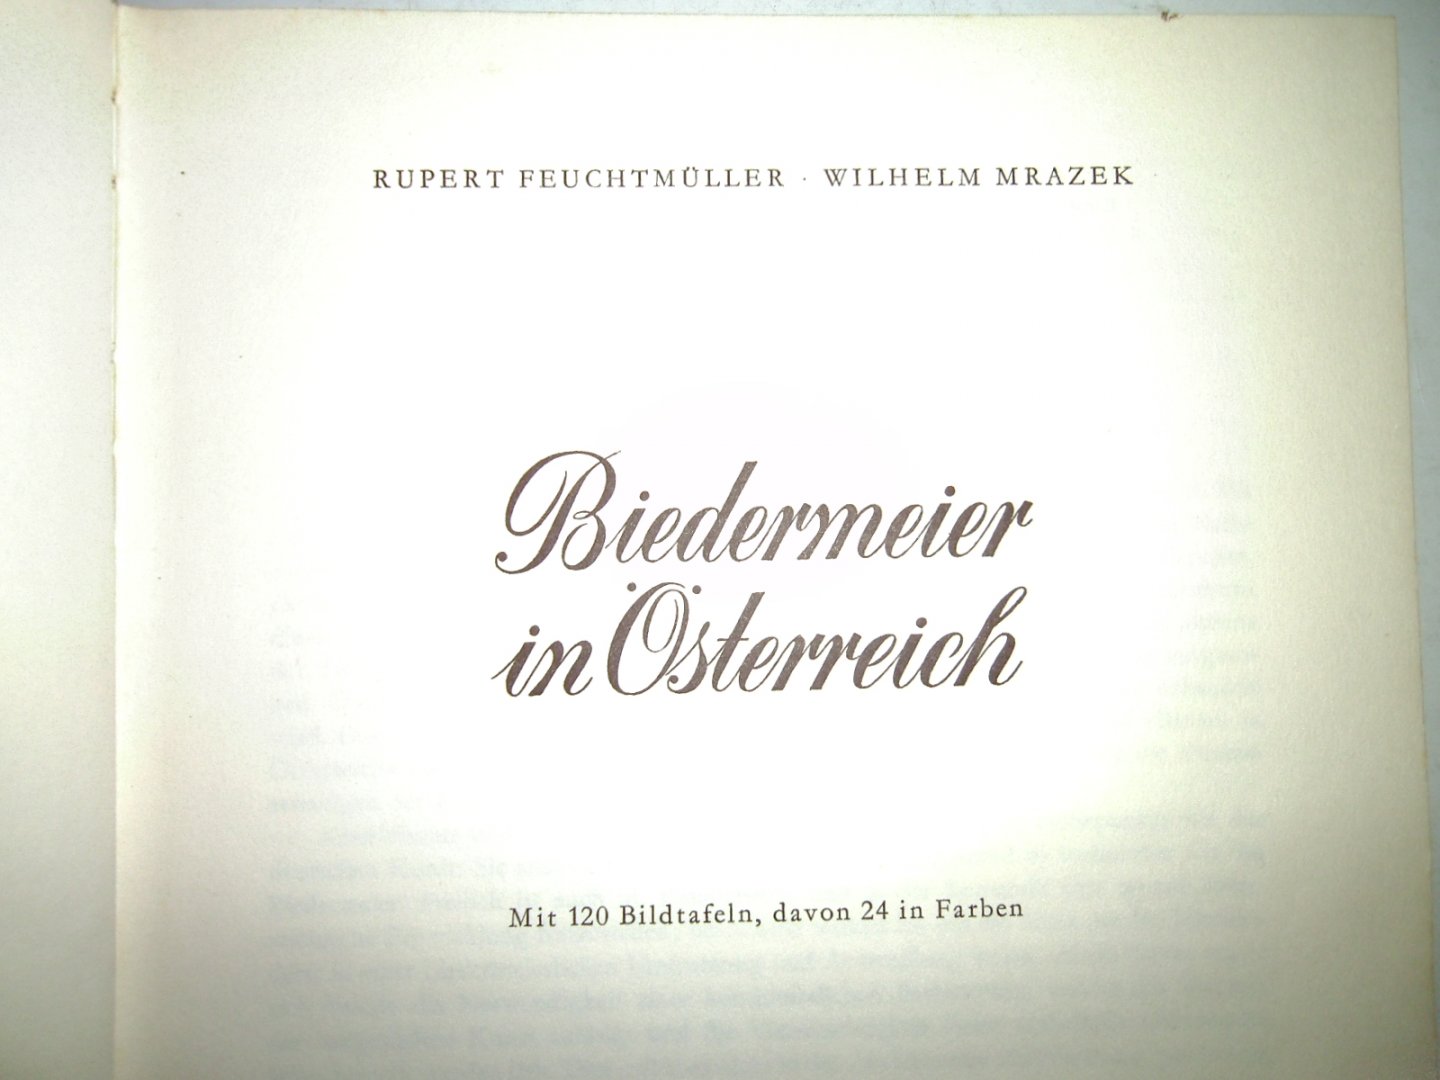 Feuchtmüller Rupert - Mrazek Wilhelm - Biedermeier in Österreich